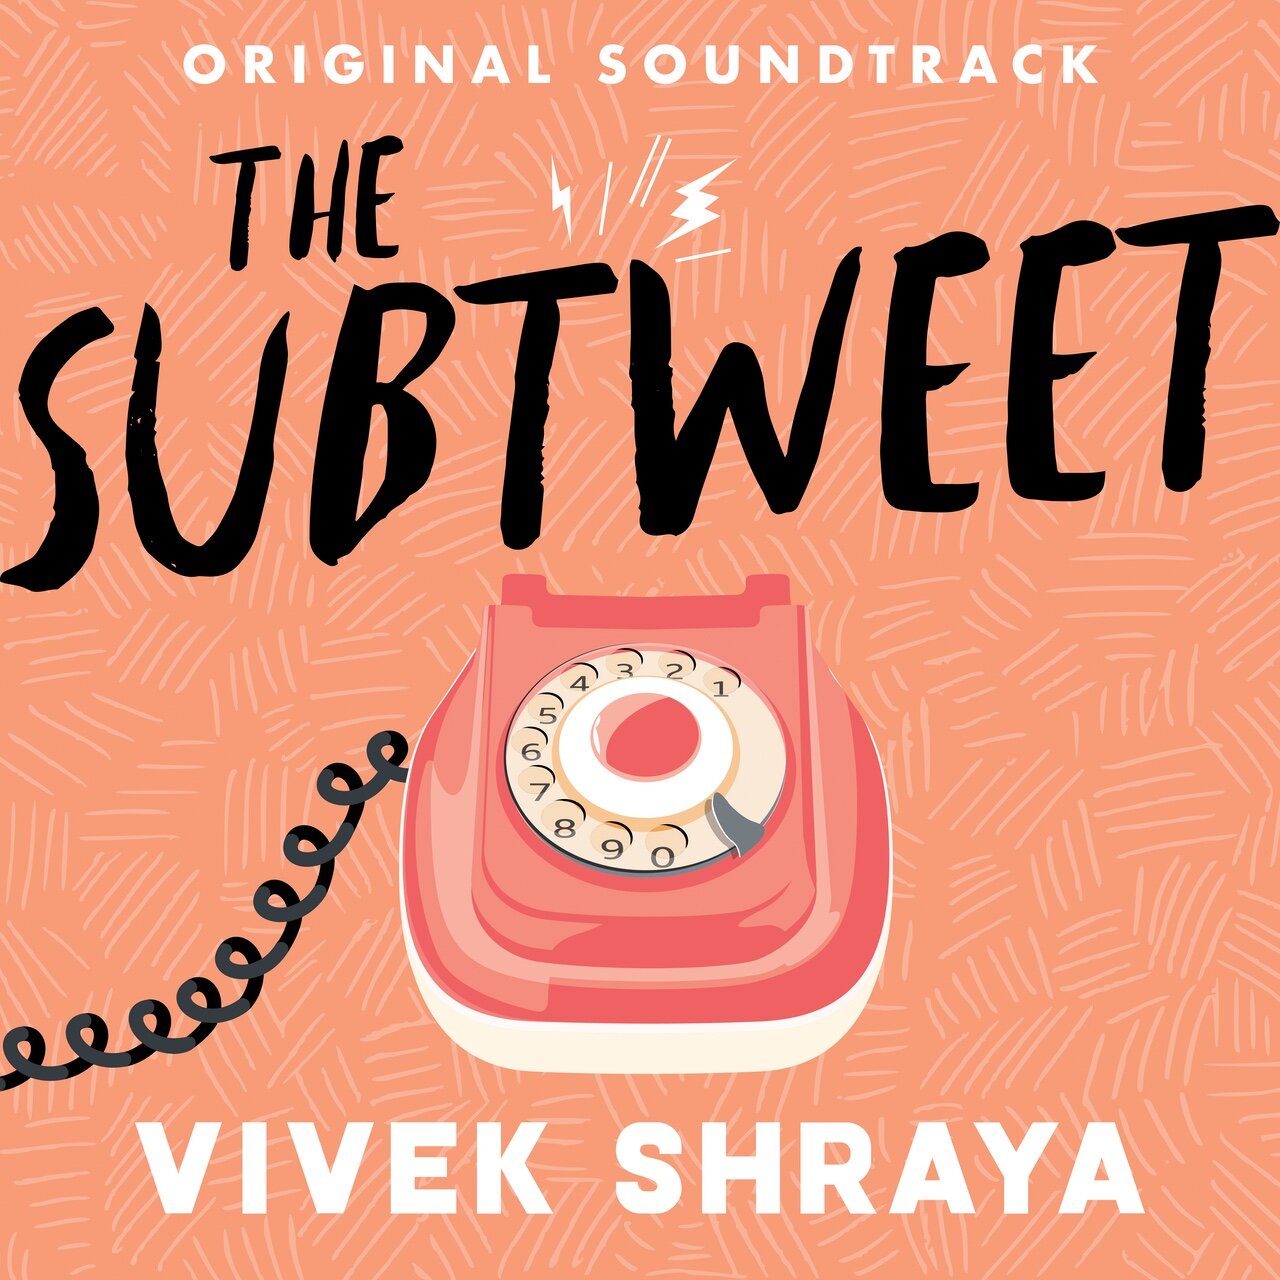 Vivek Shraya: The Subtweet (Novel Soundtrack, 2019)